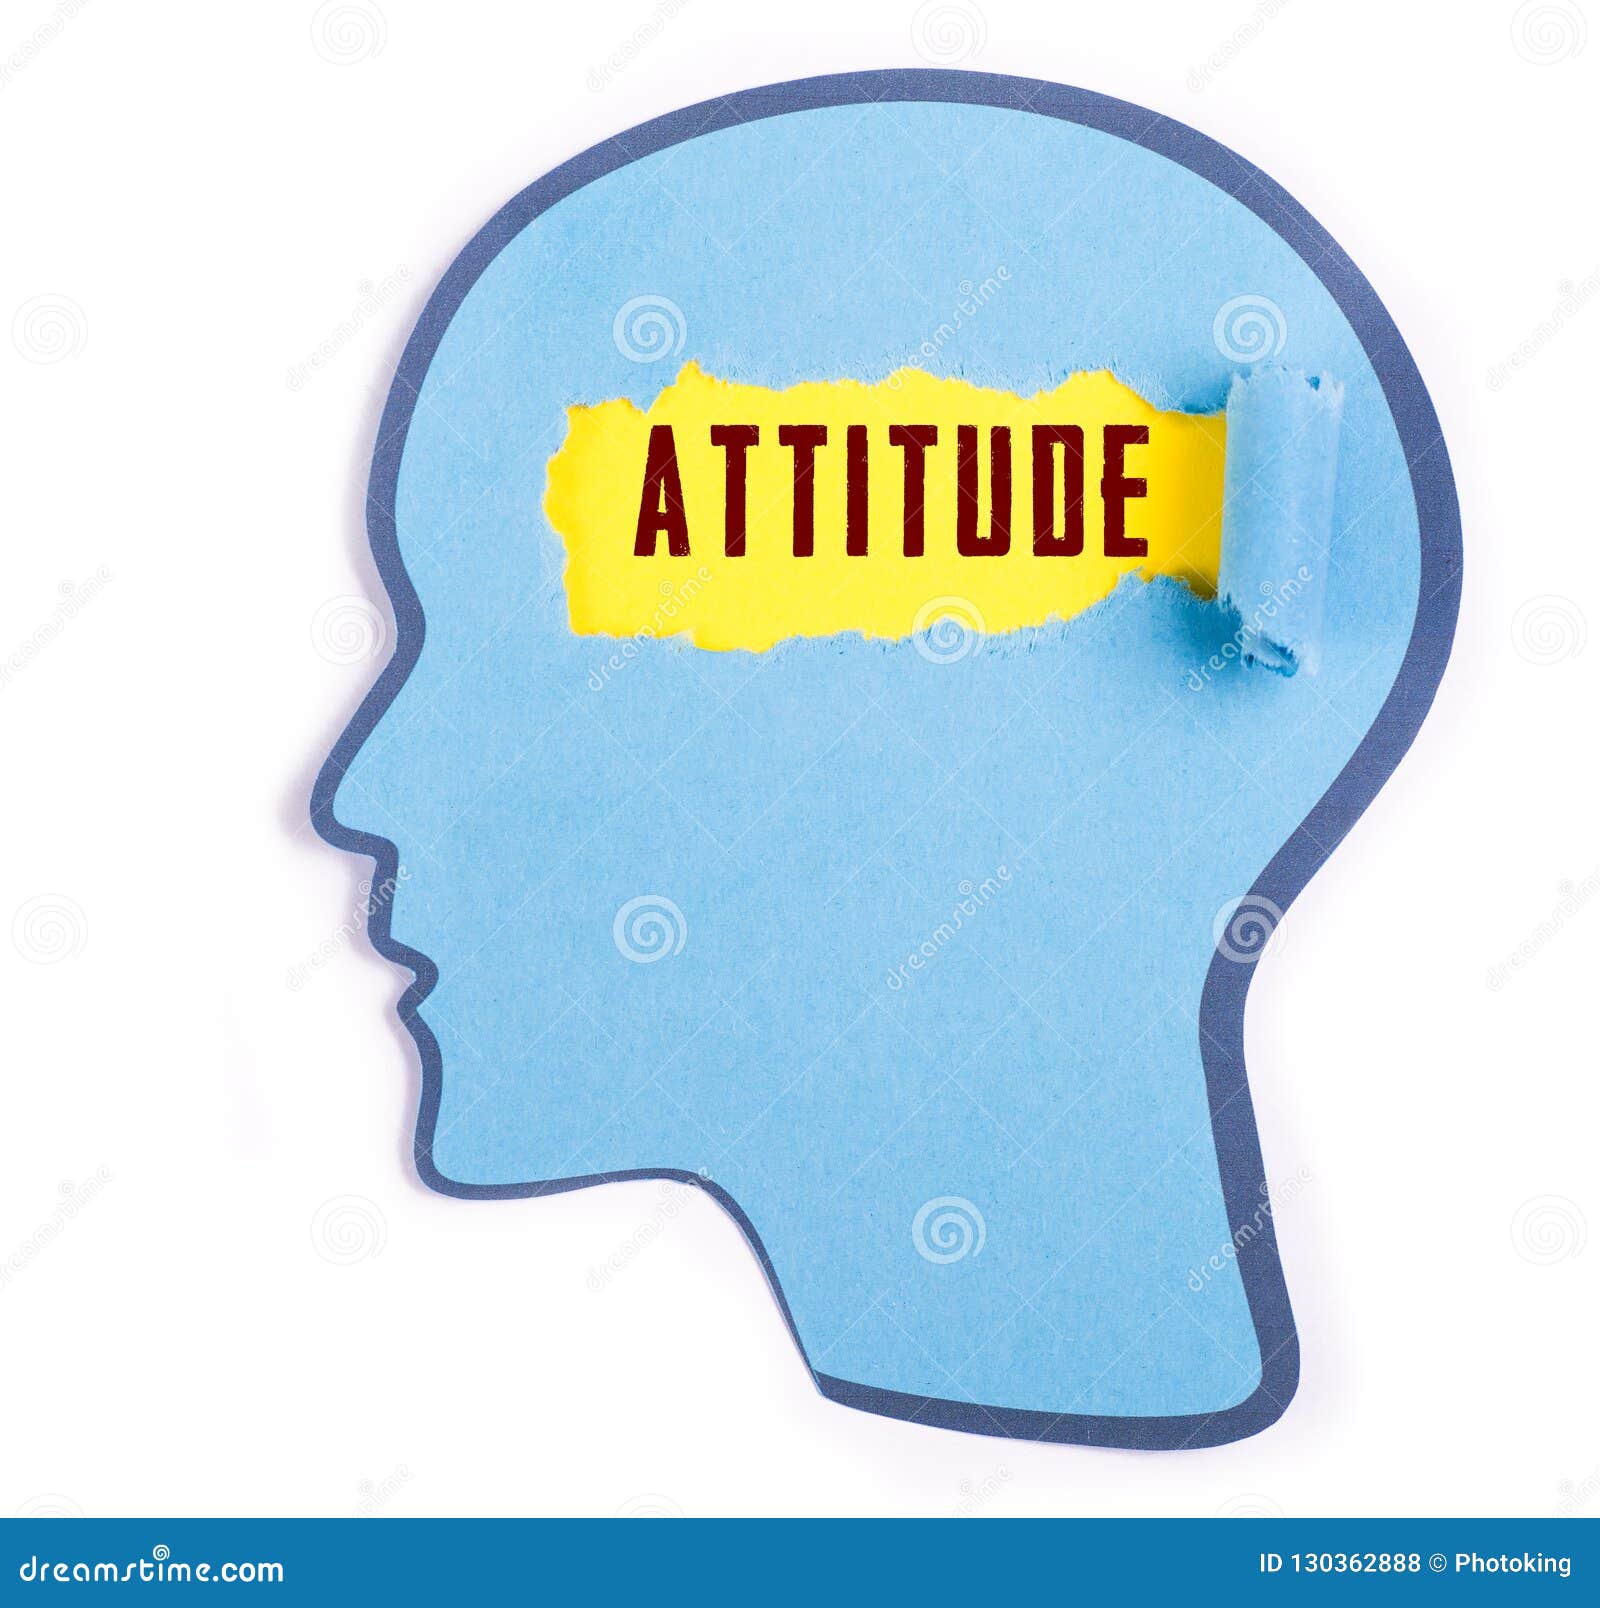 attitude word in the person head